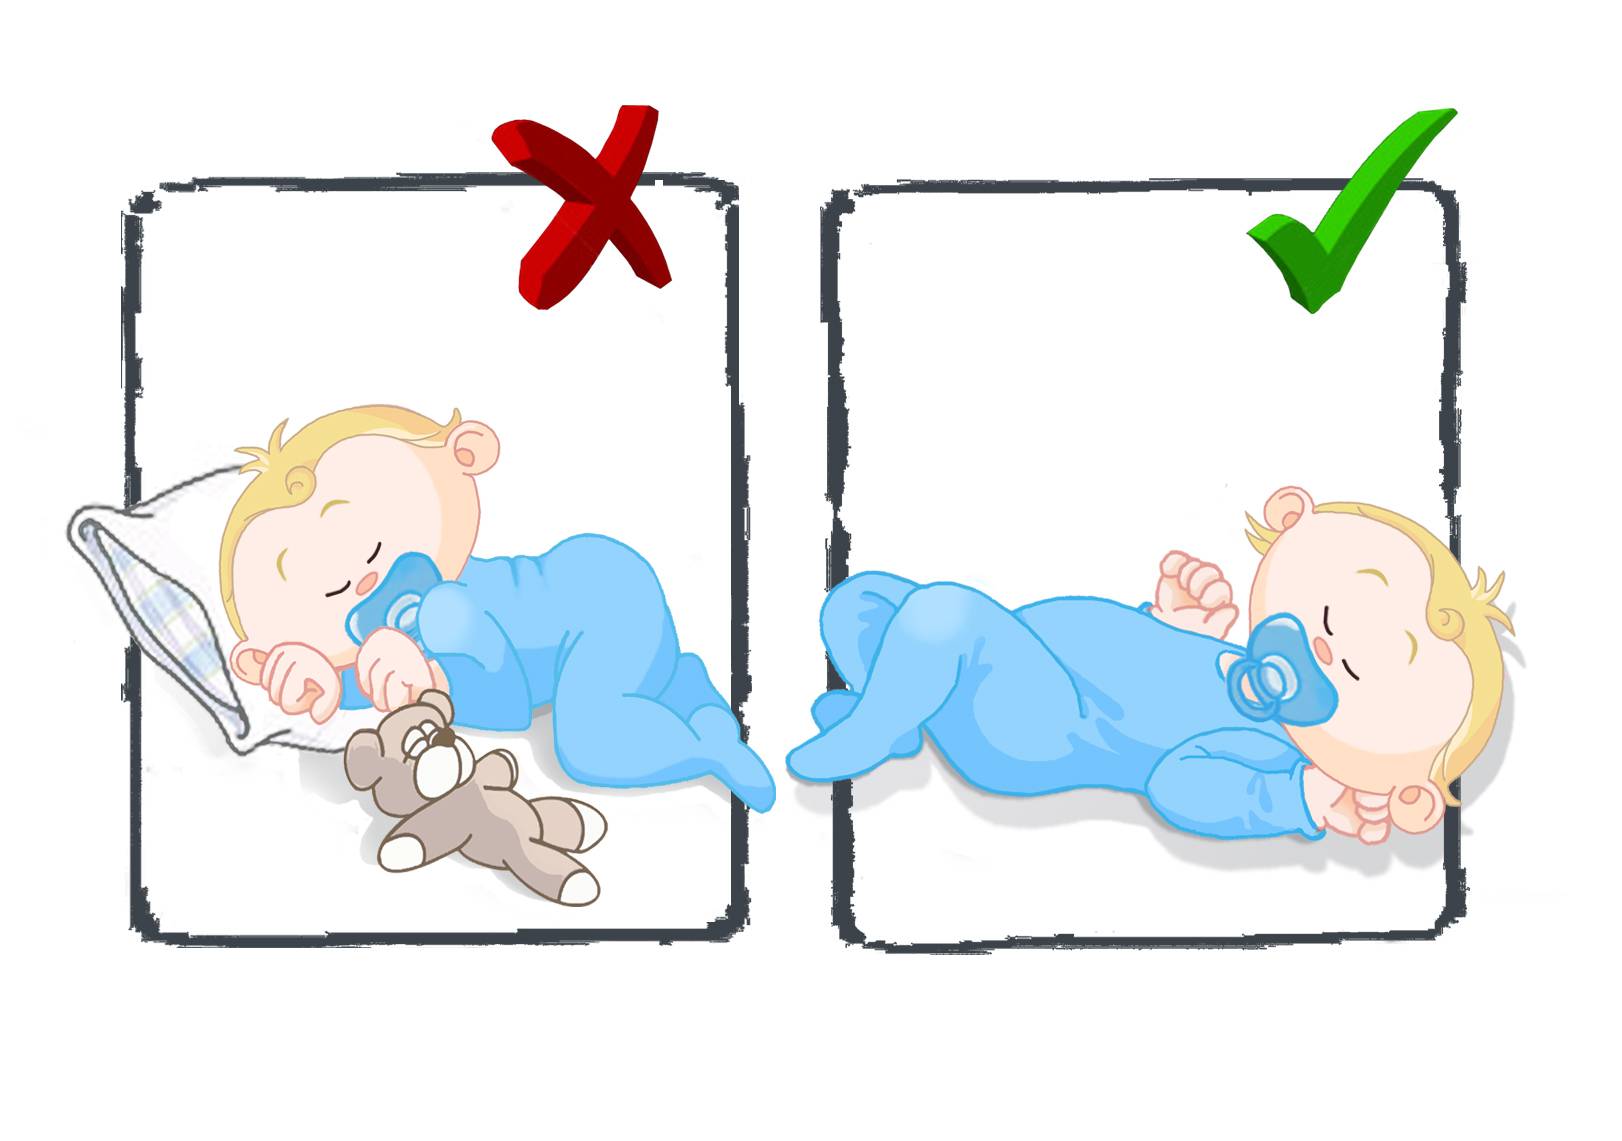 Как уложить маленького ребенка спать на ночь?